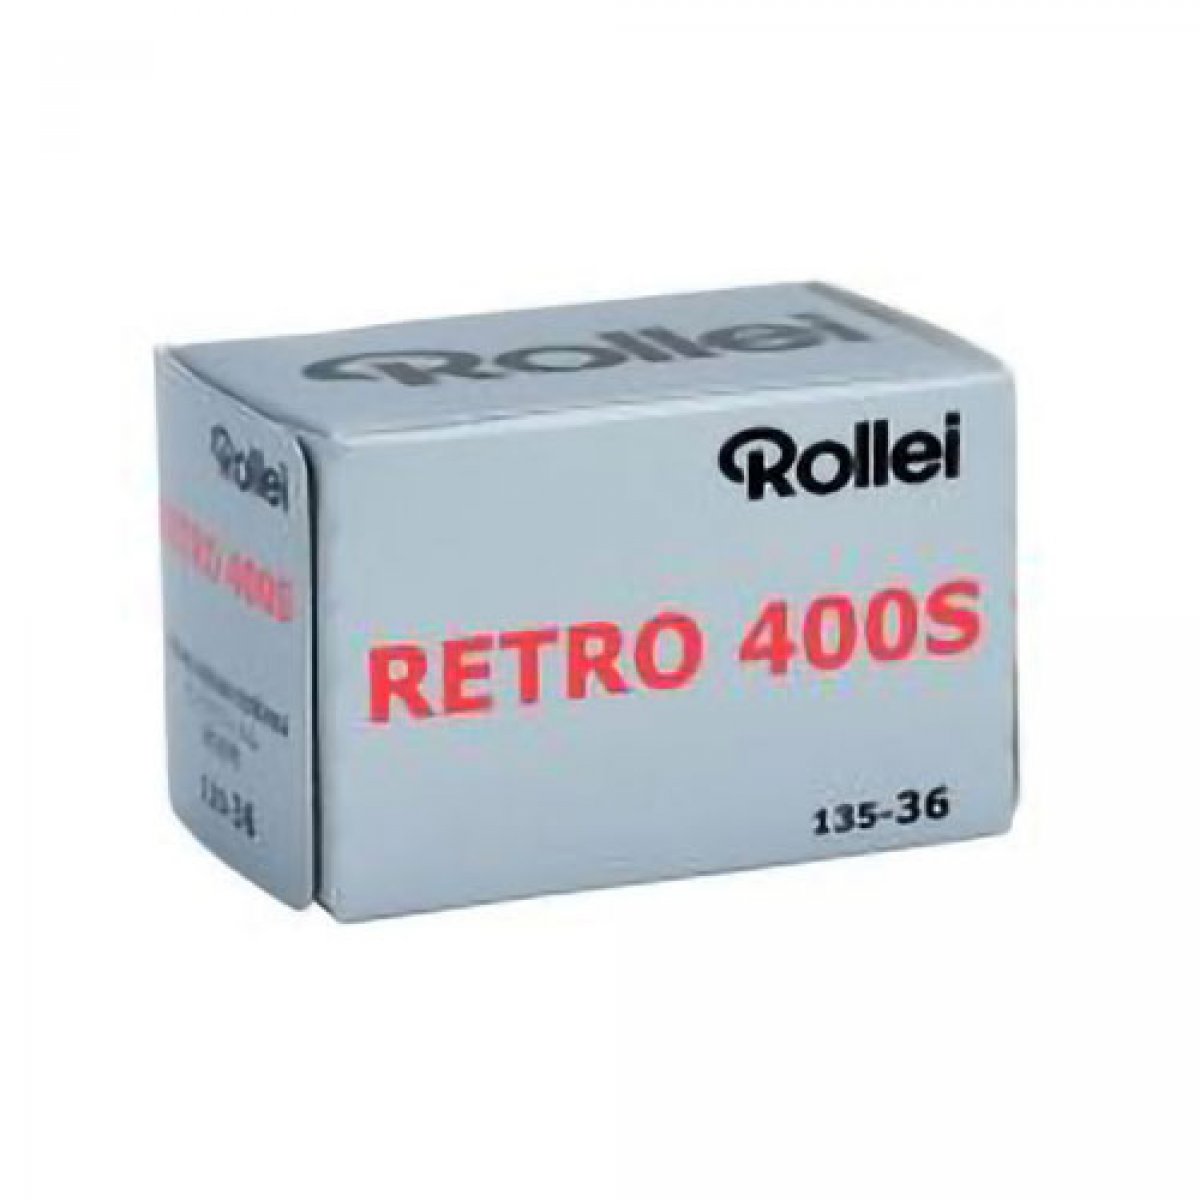 Rollei Retro 400S 135-36 Pellicola bianco/nero